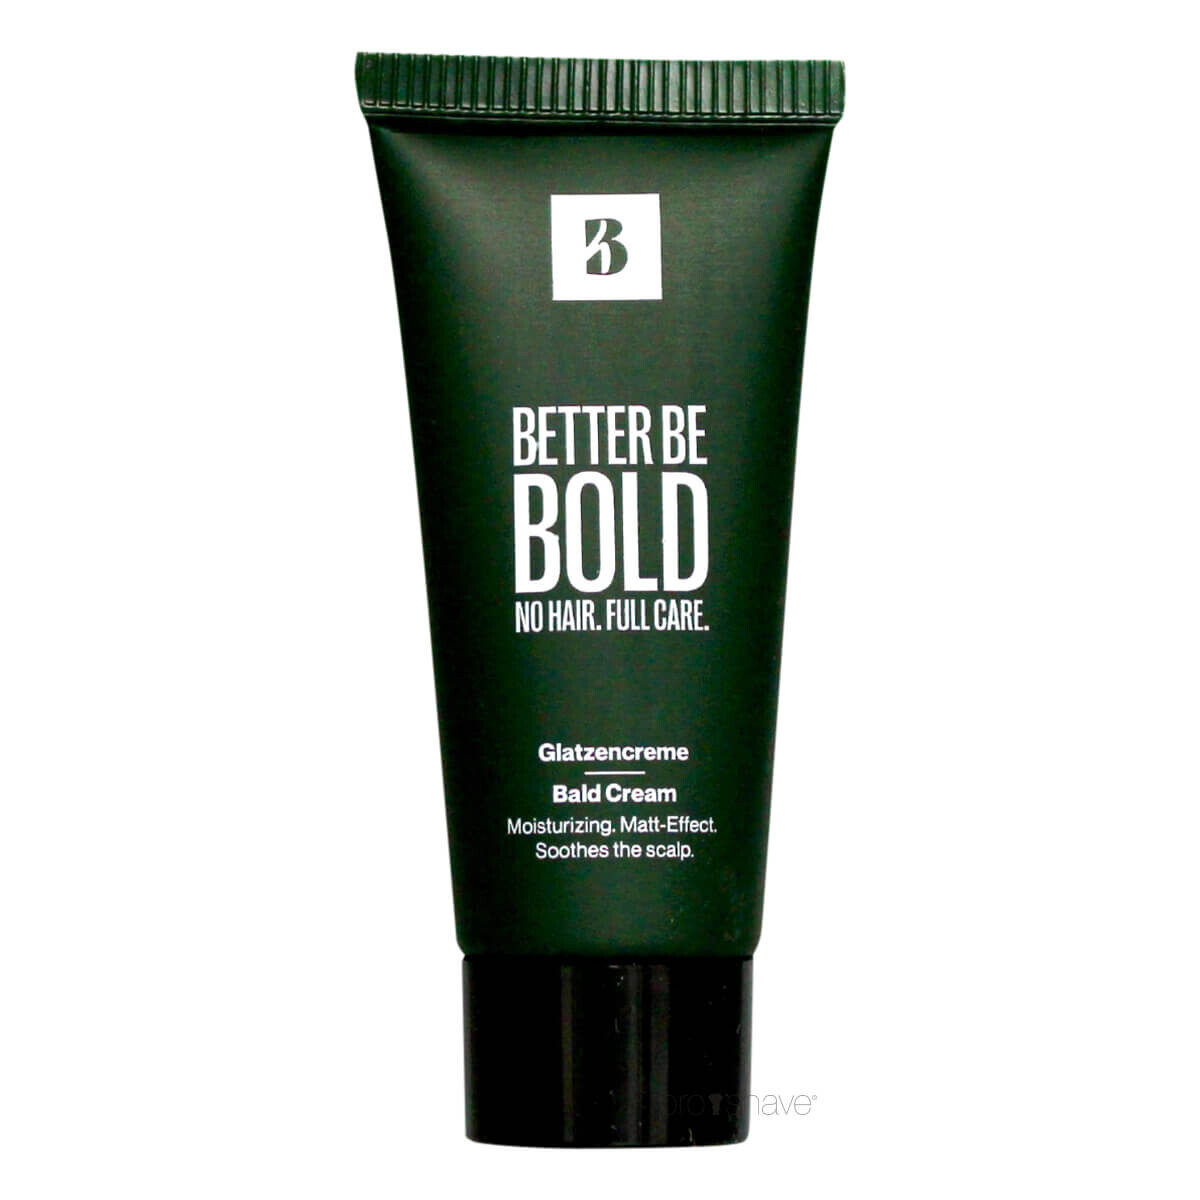 Better Be Bold, No Hair. Full Care, Bald Cream, Sample, 5 ml.